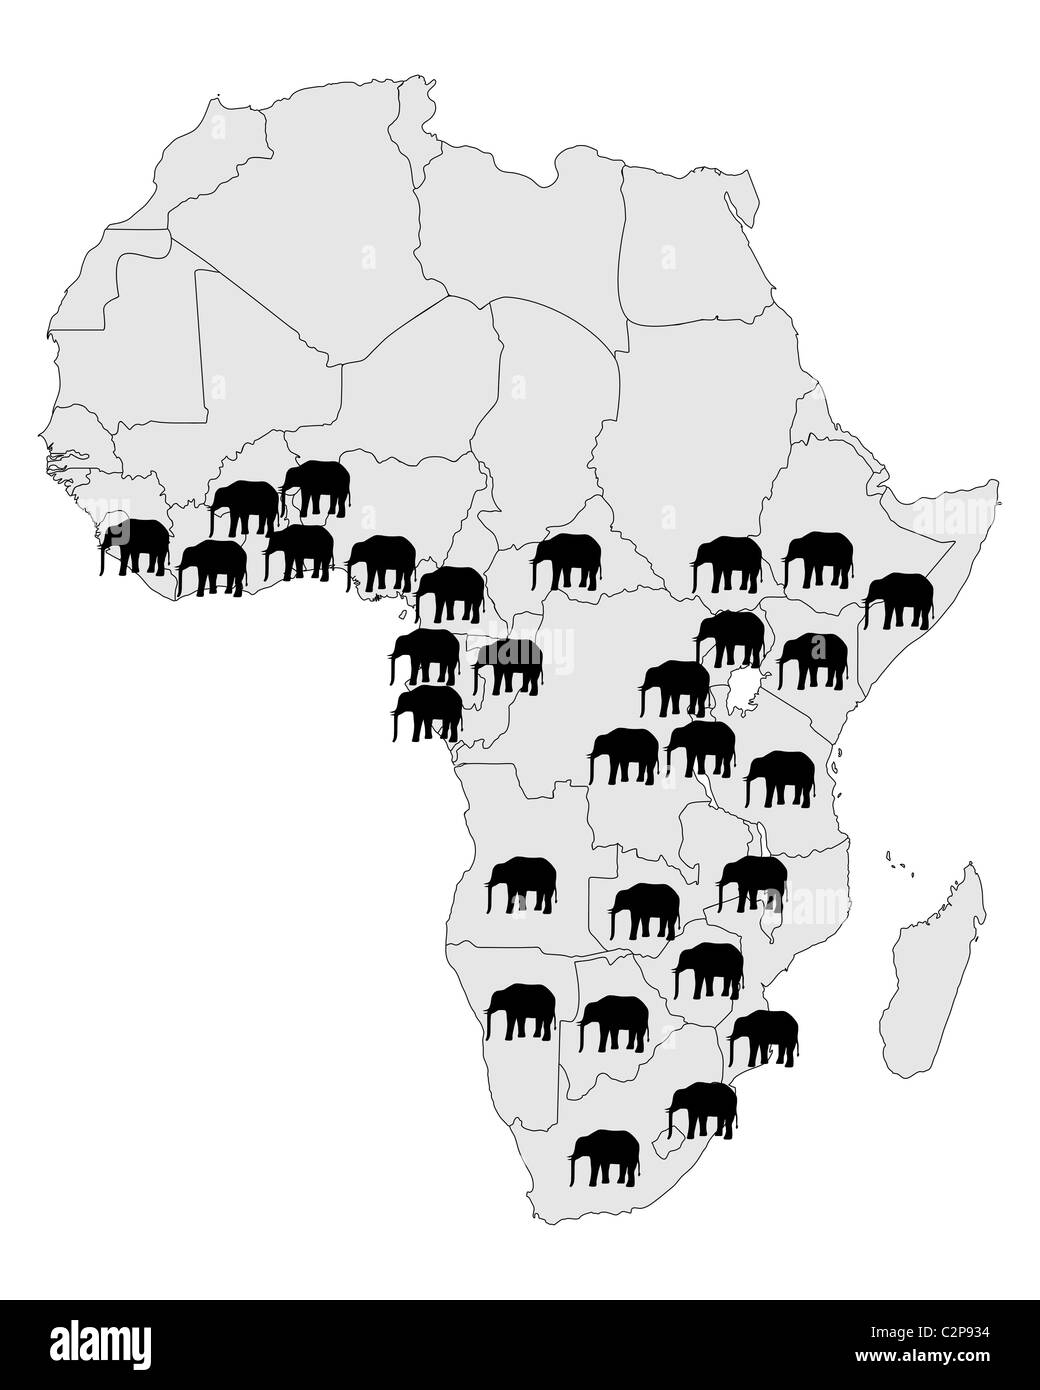 Repartition De L Elephant D Afrique C2p934 